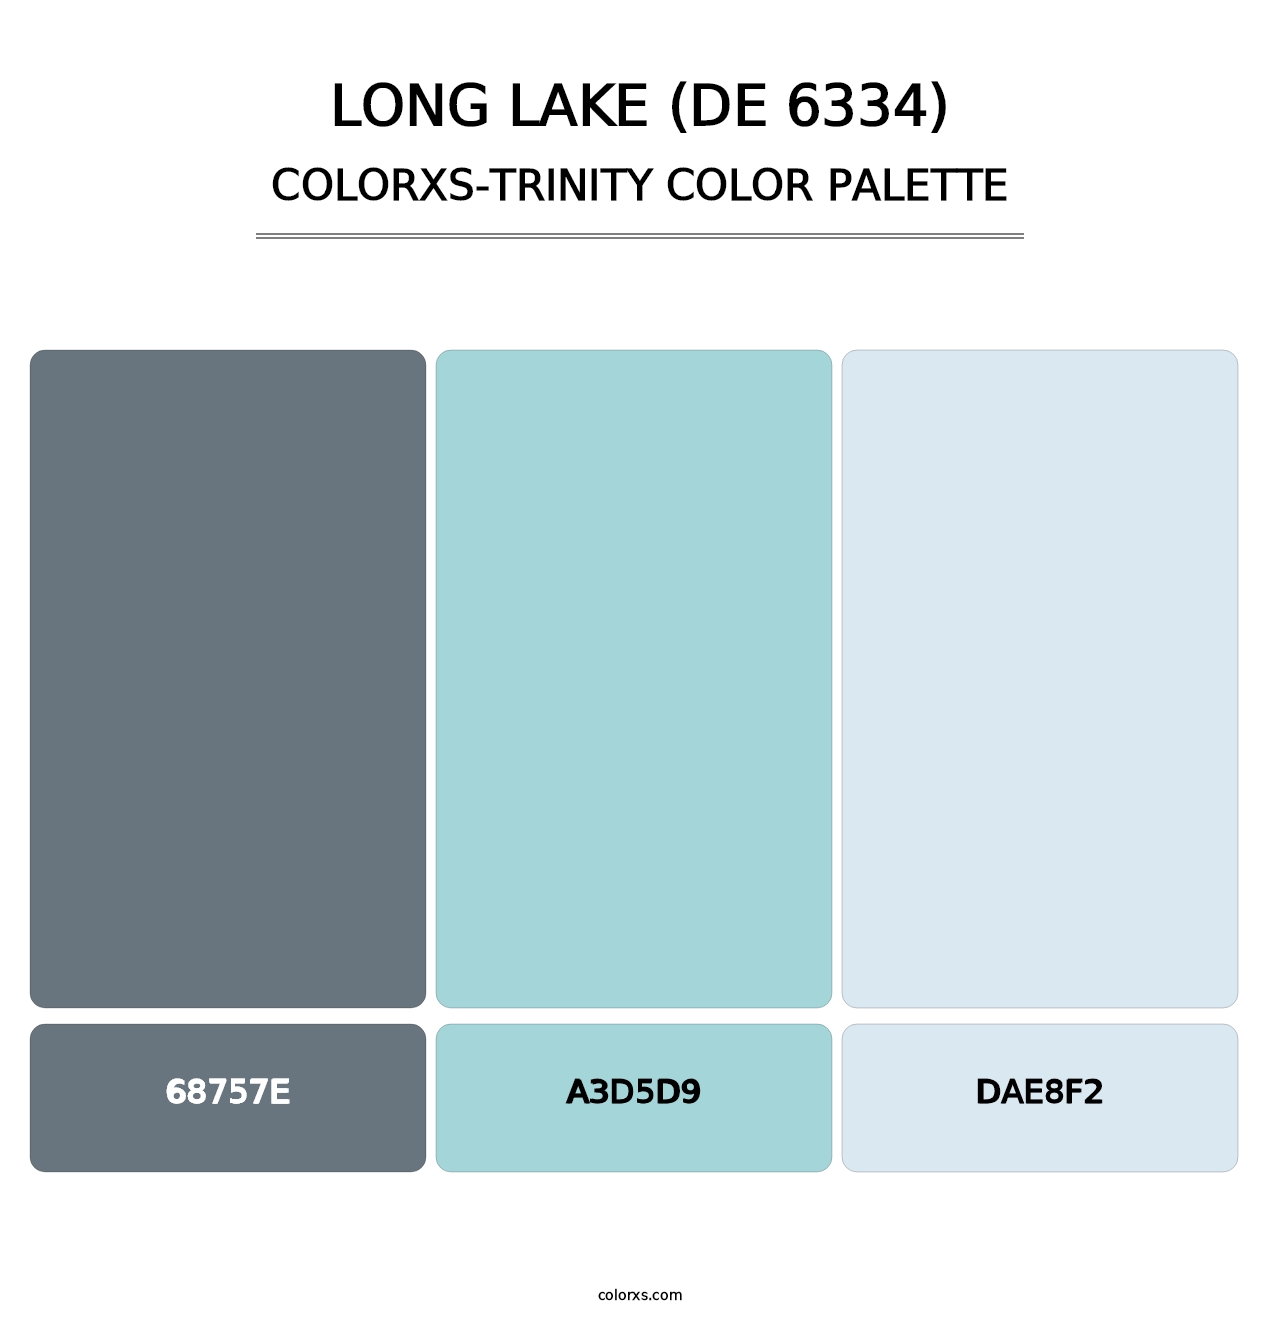 Long Lake (DE 6334) - Colorxs Trinity Palette